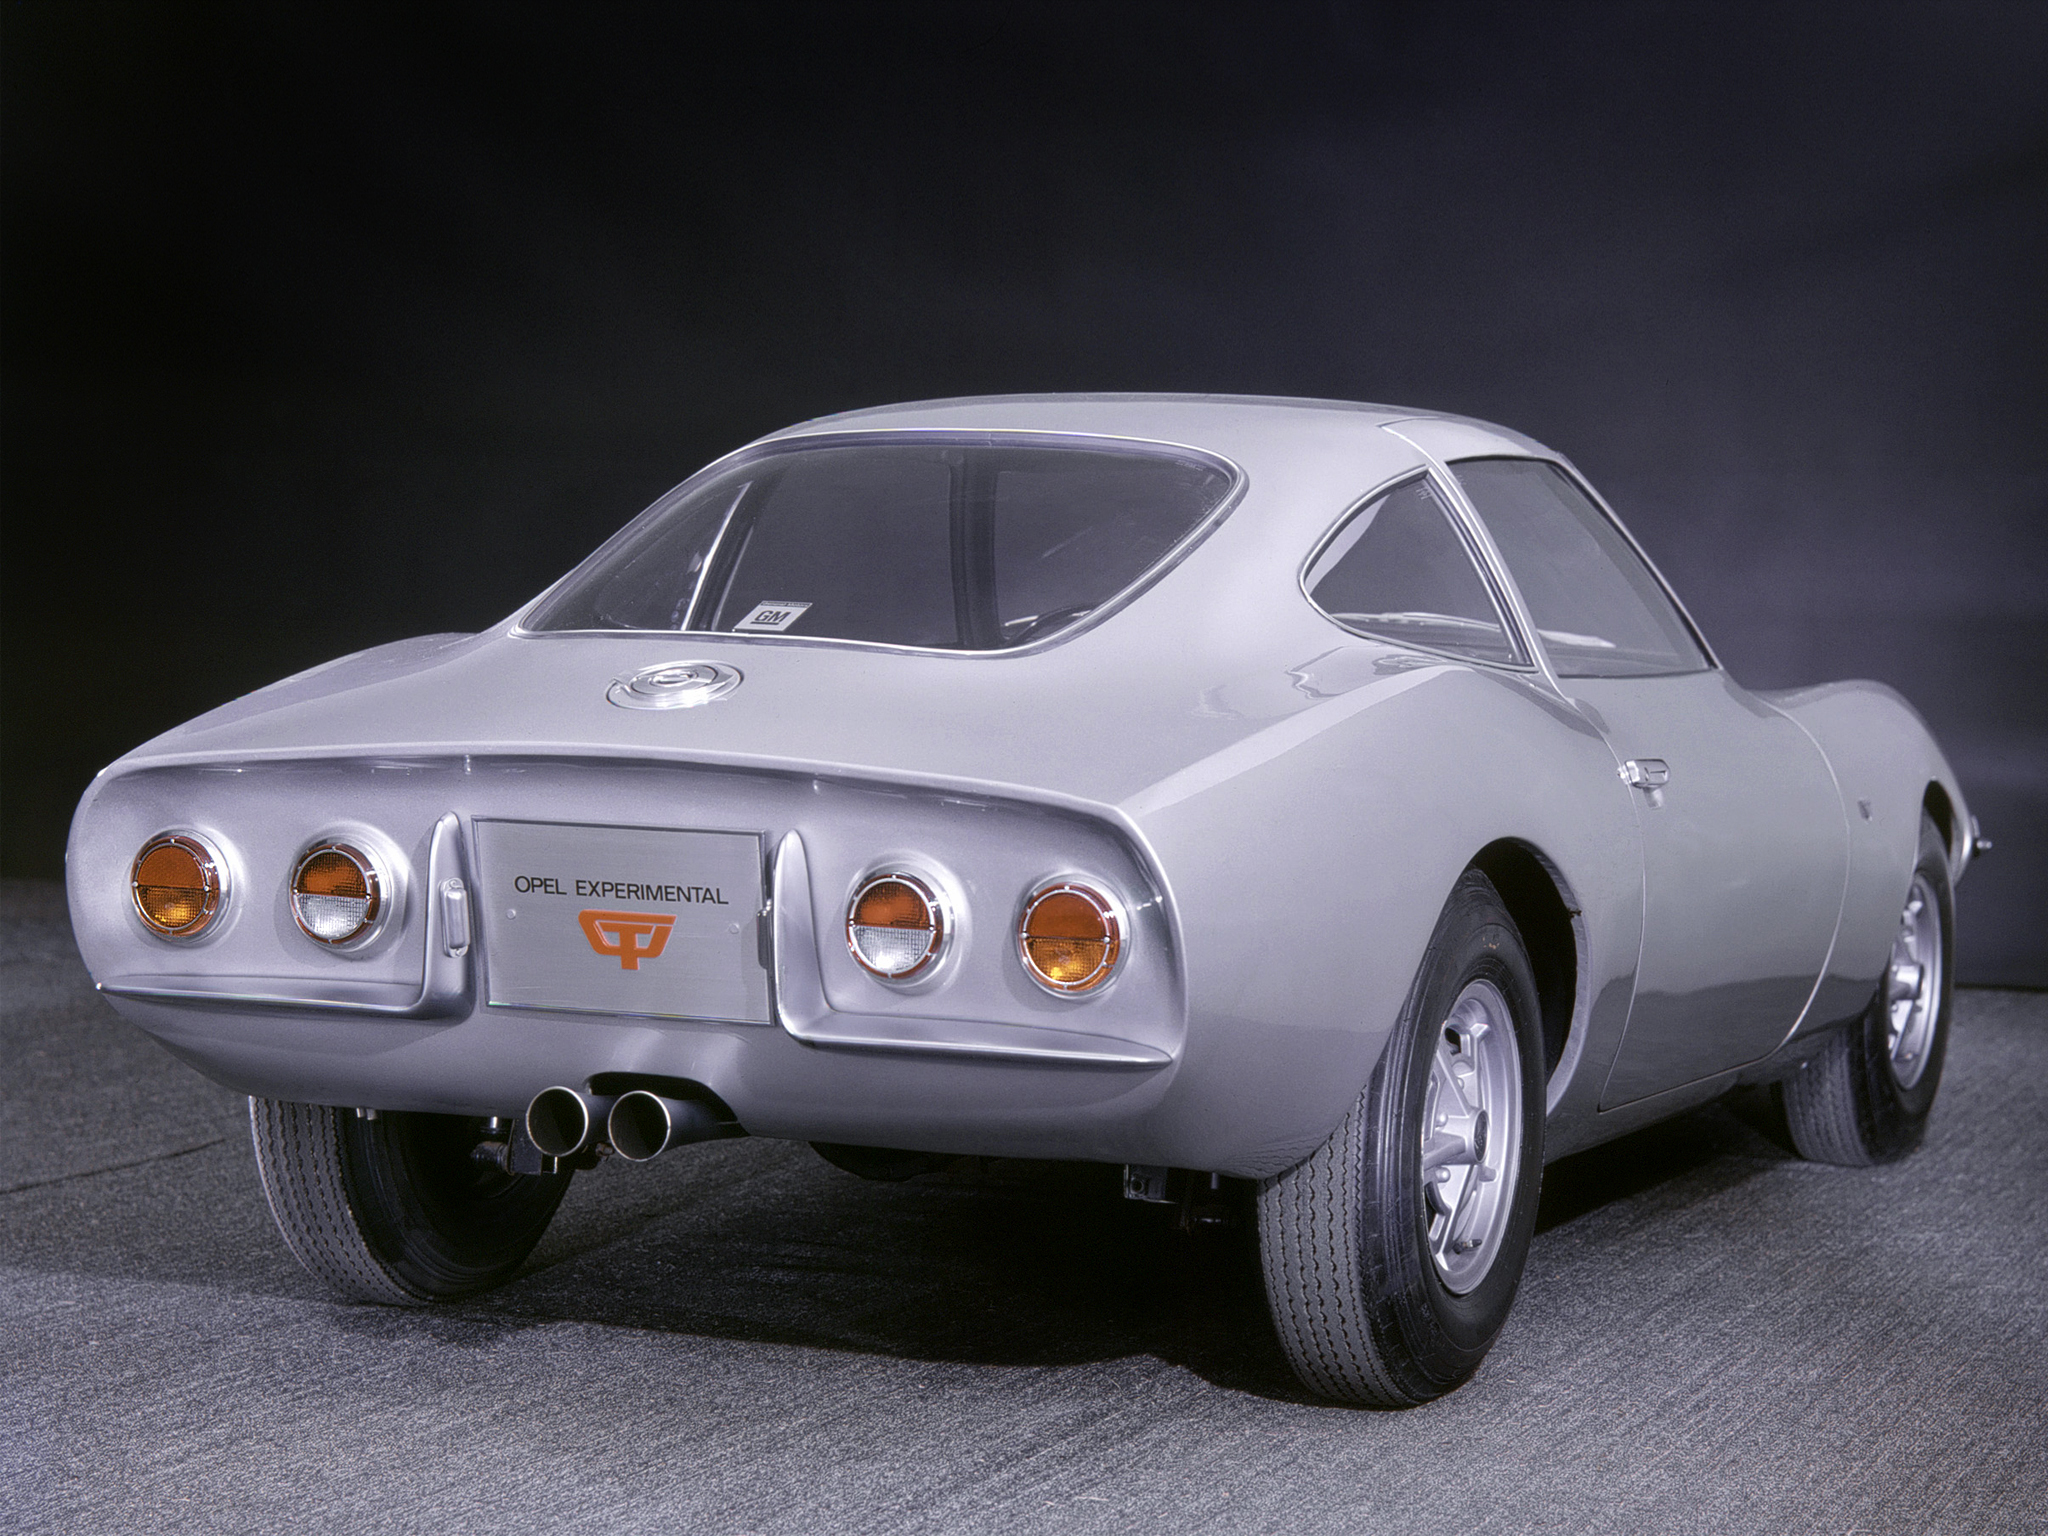 1965, Opel, Experimental, Gt, Classic, G t Wallpaper